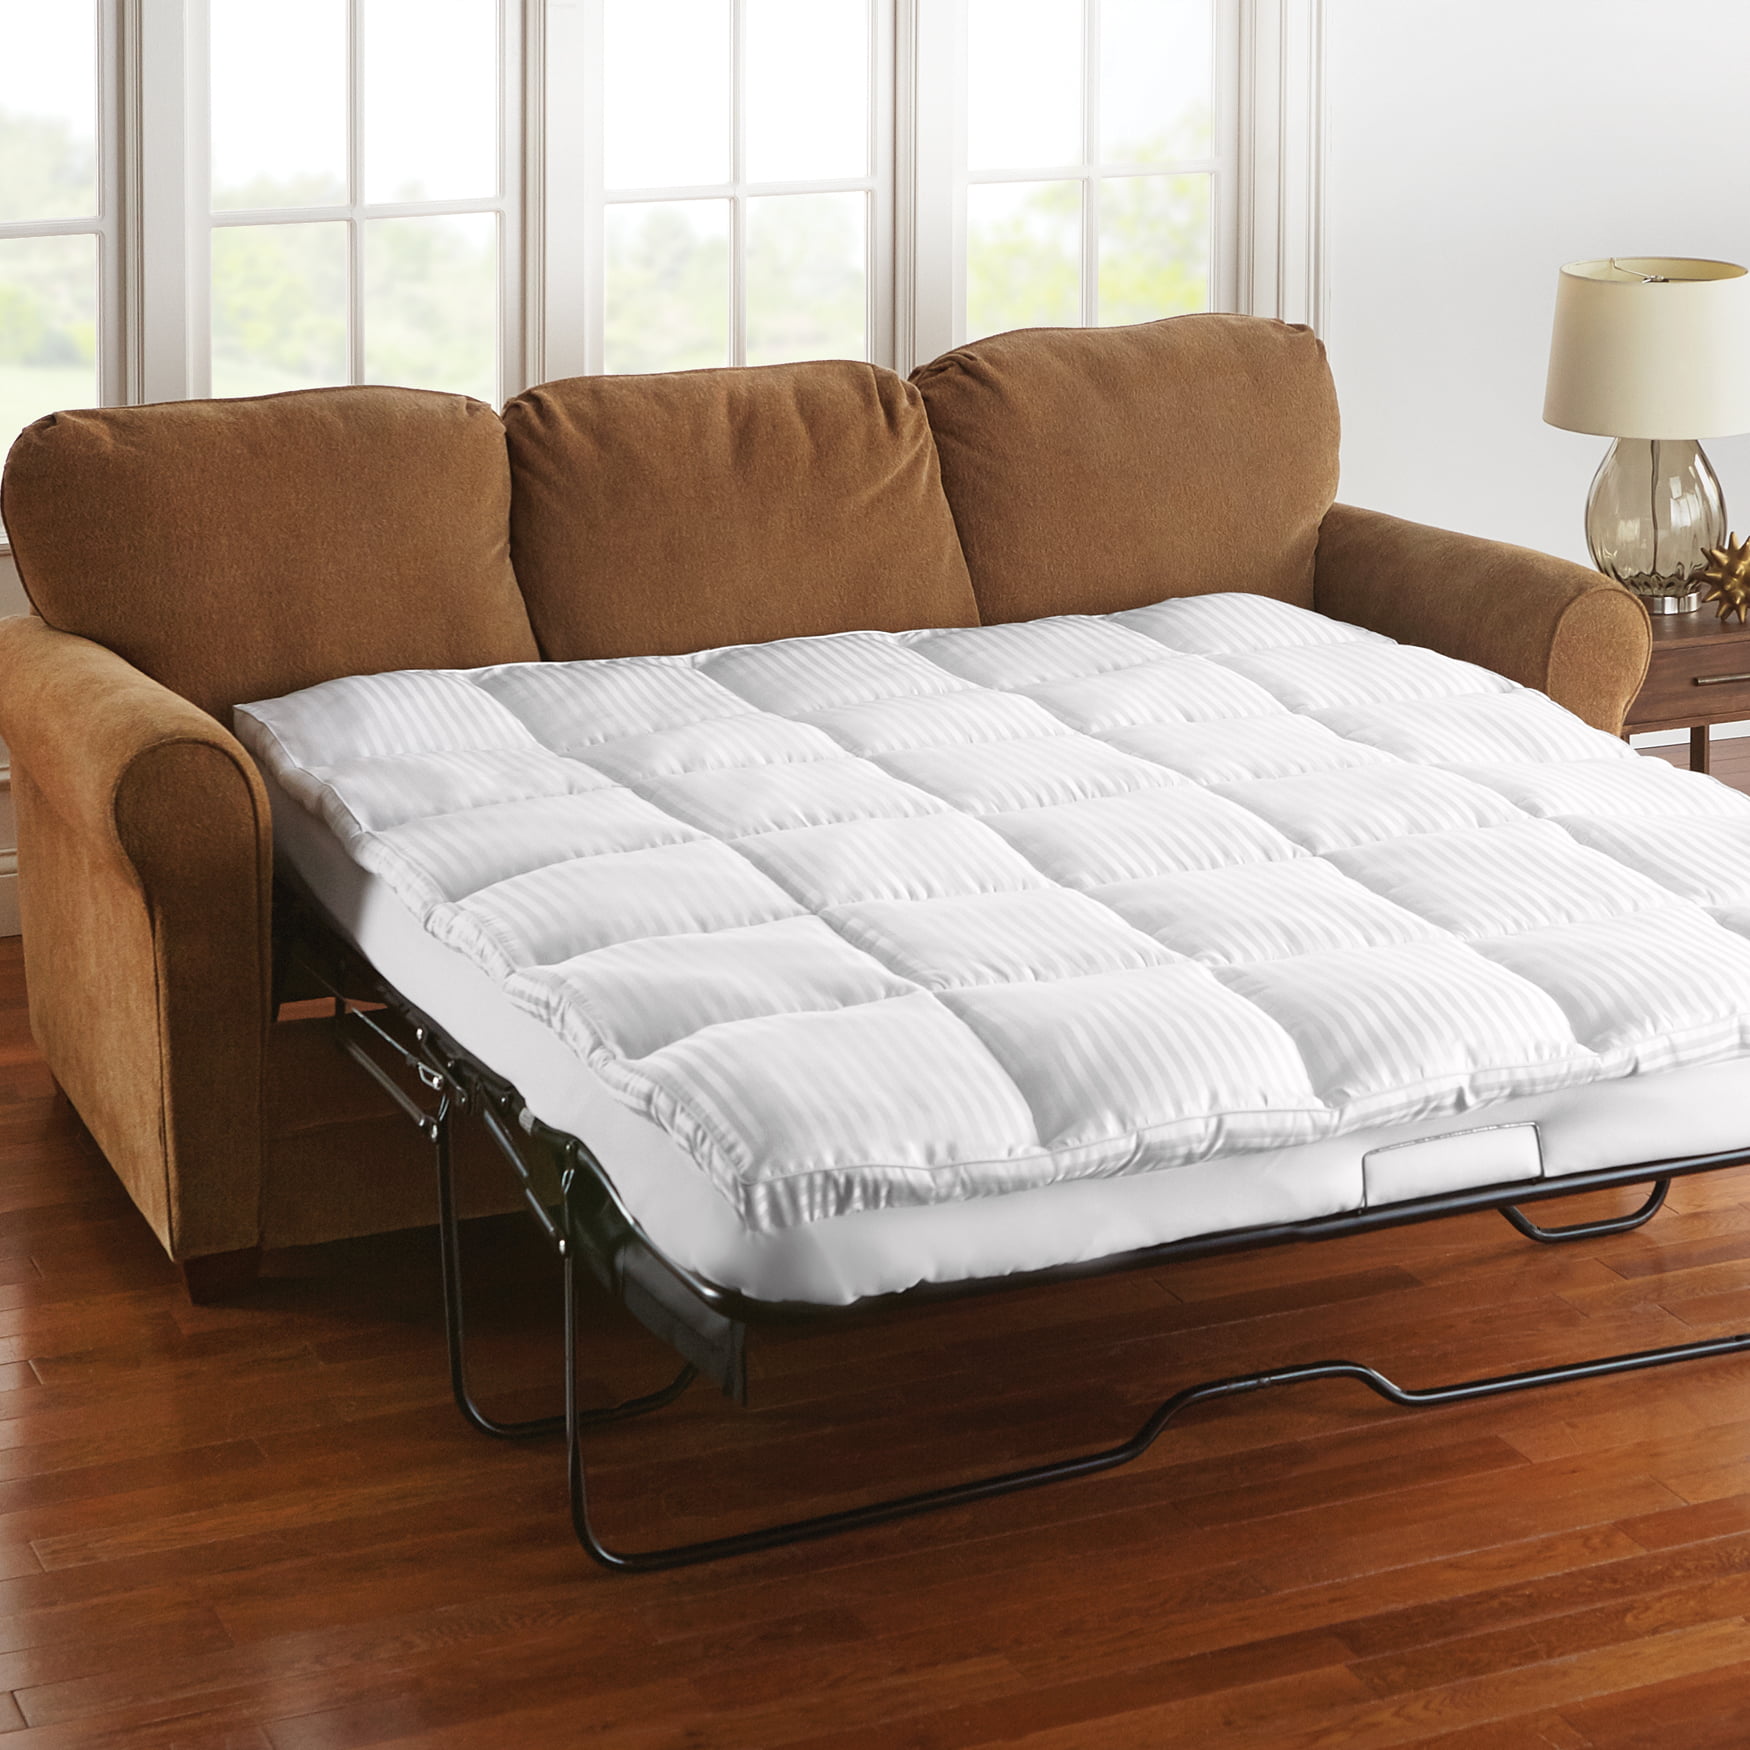 Brylanehome Sofa Bed Mattress Topper - Queen, White - Walmart.com full size mattress topper amazon